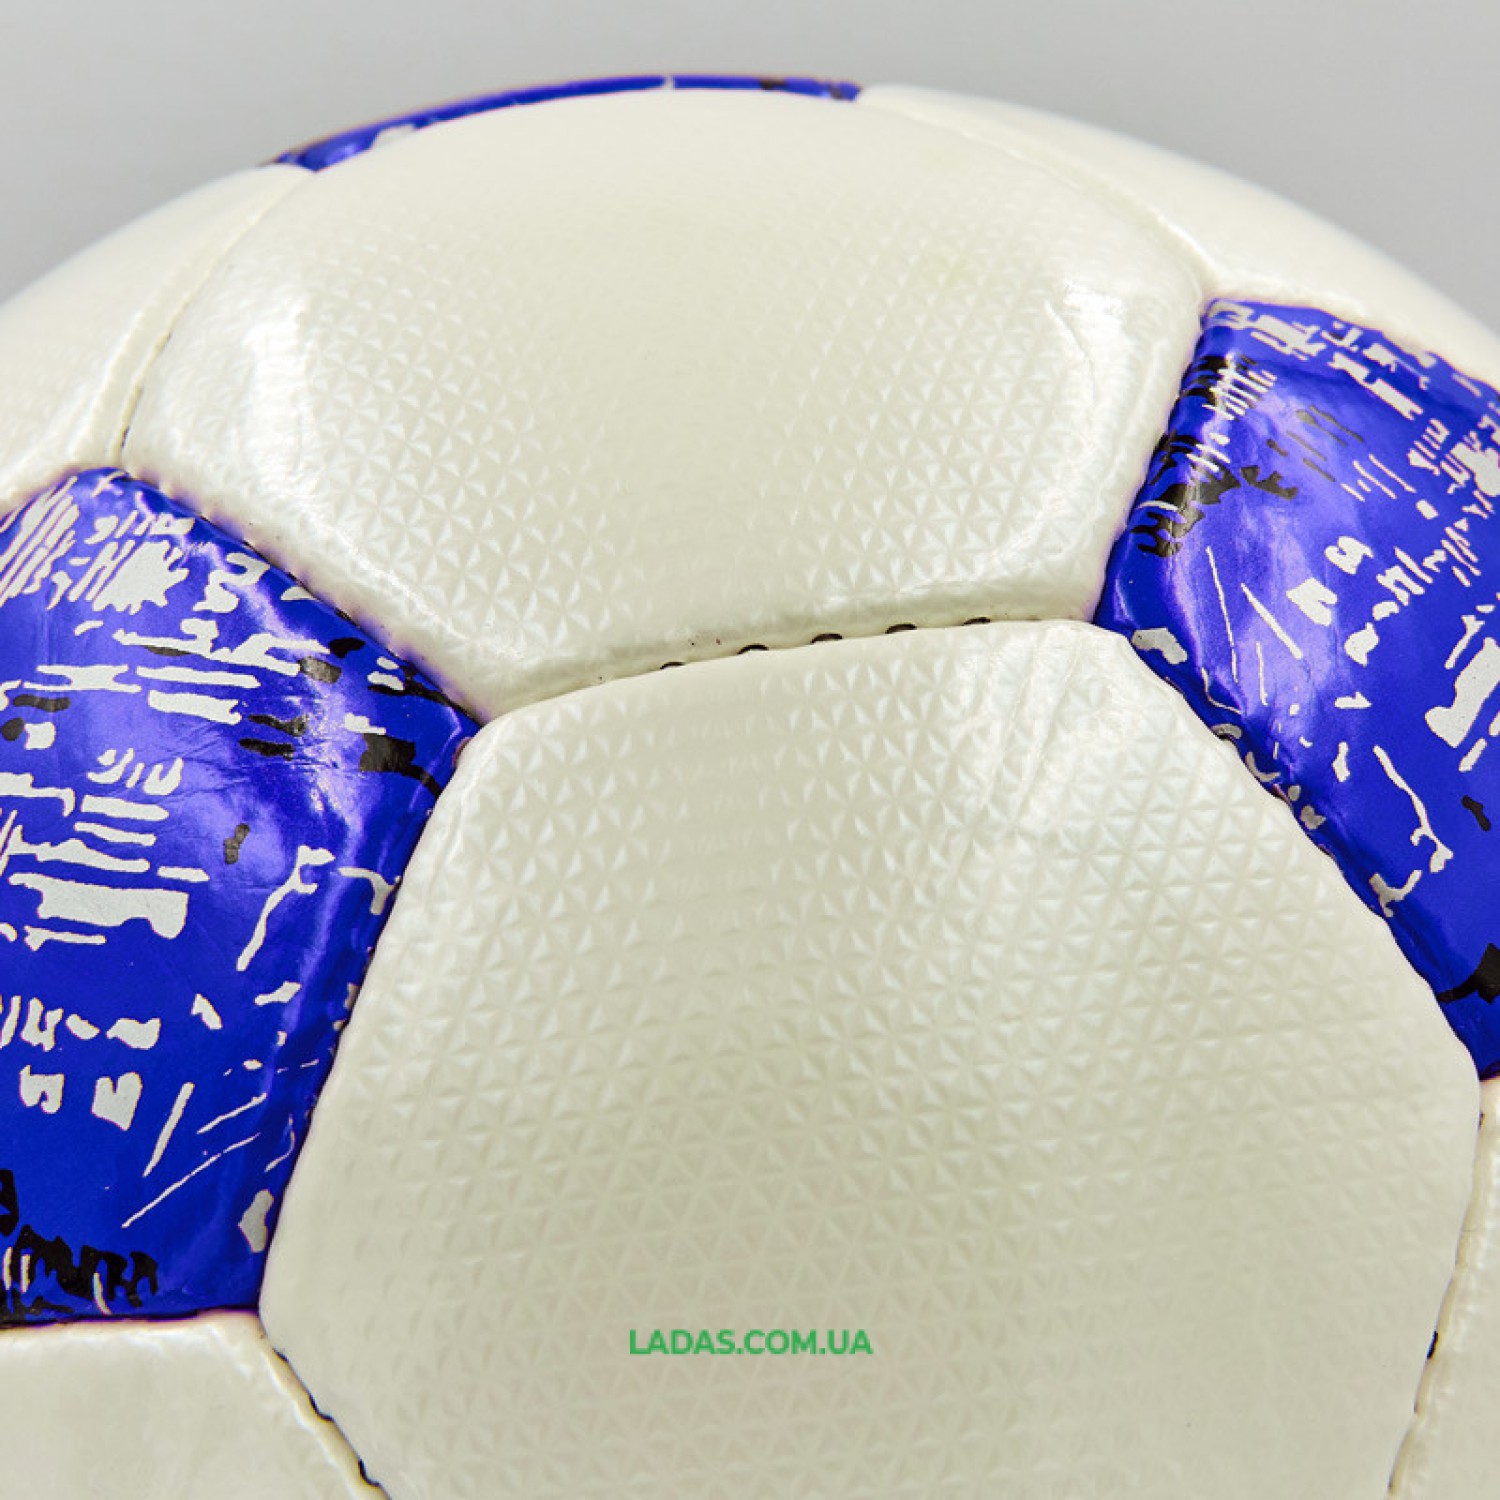 Мяч футбольный №5 PU ламинированный OFFICIAL (бело-синий, сшит вручную)